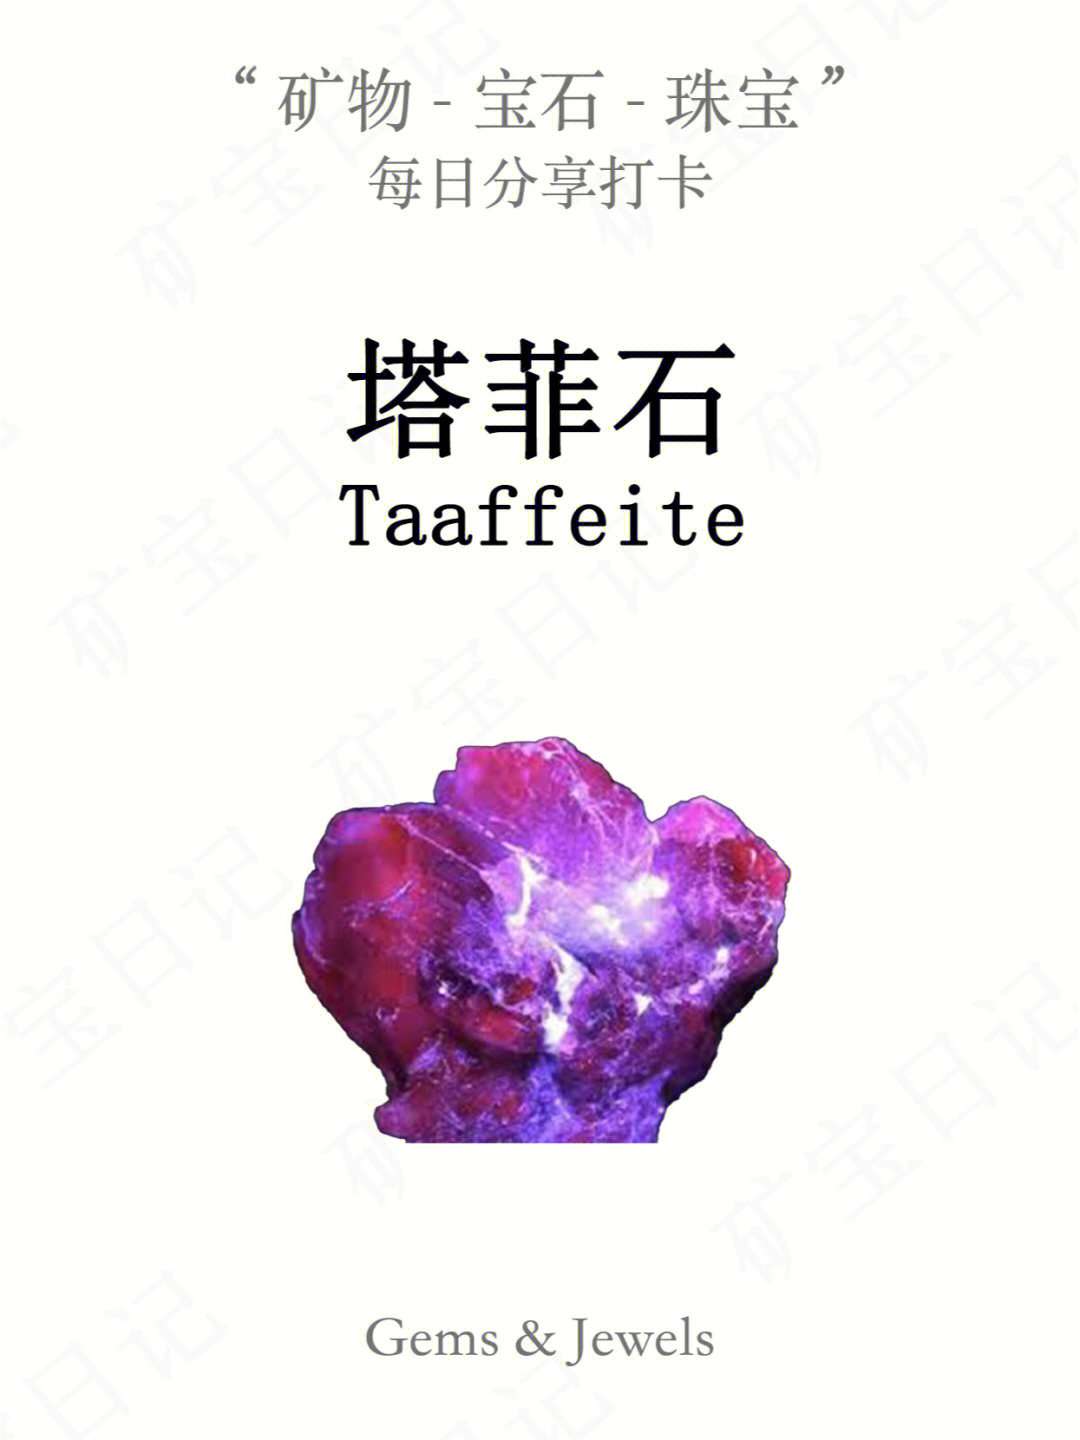 塔菲石,又称铍镁晶石,英文名taaffeite,来源于一个叫taaffe的人:1945